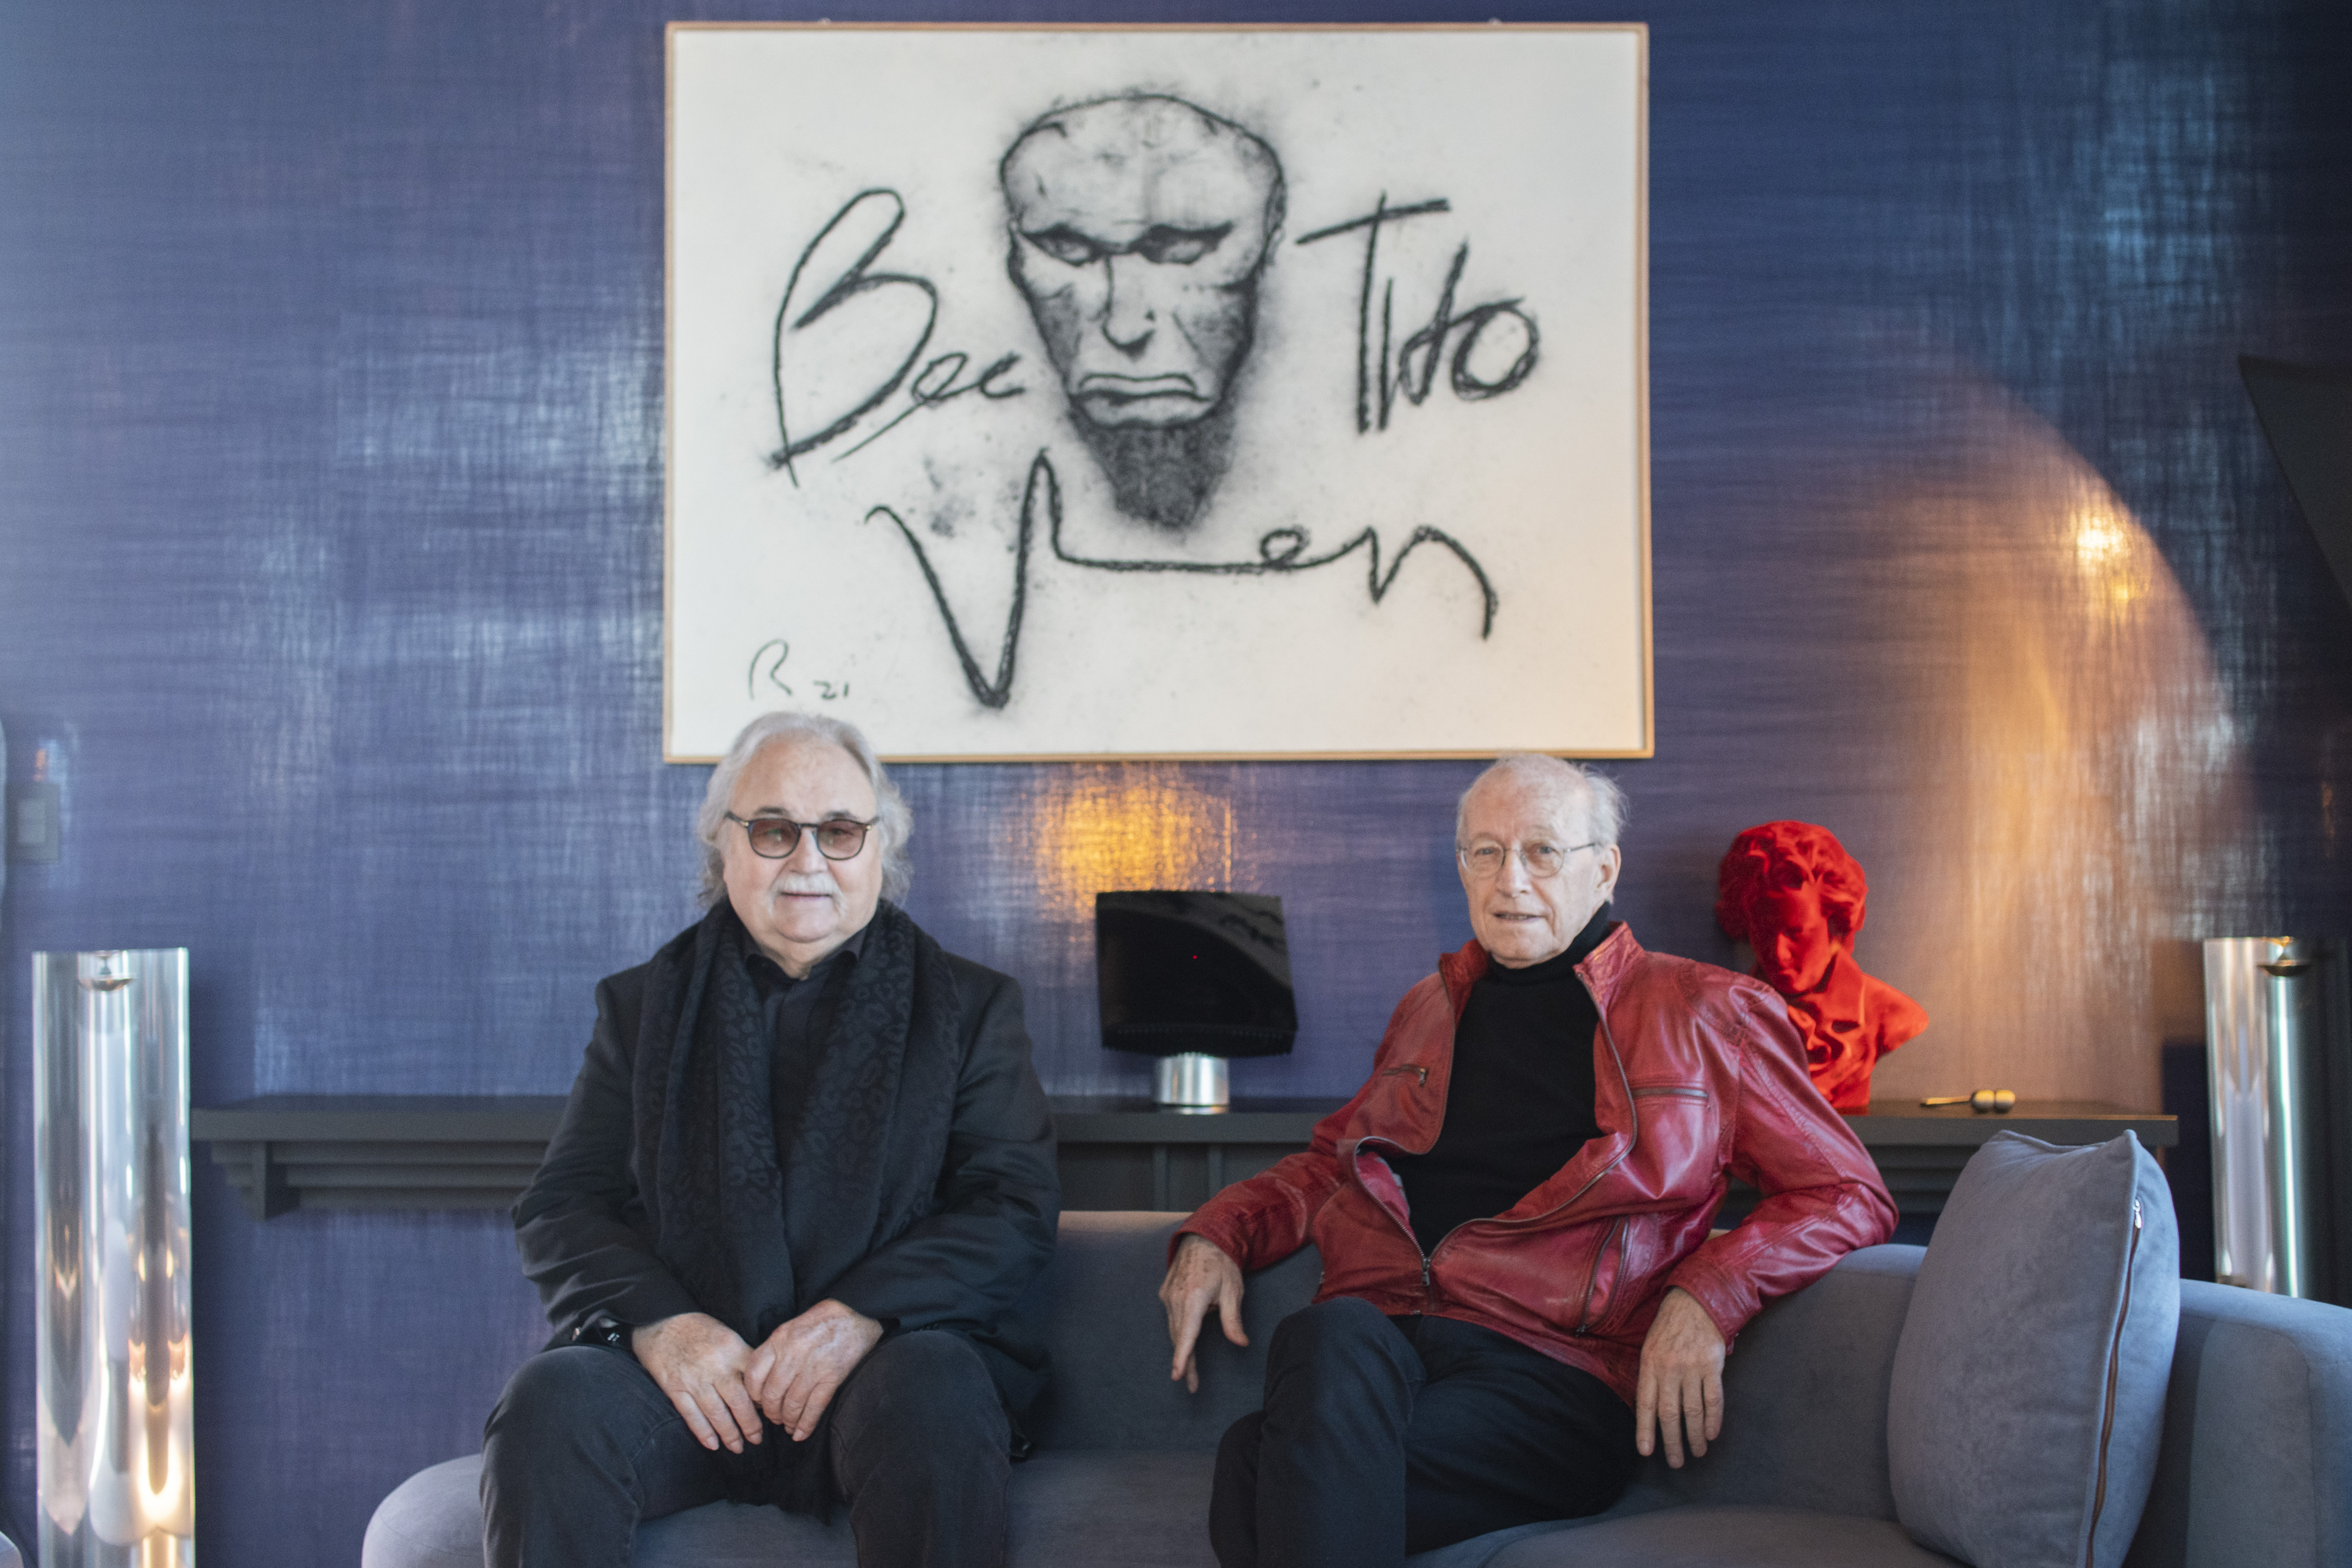 베토벤을 그린 그림 앞에 앉아 작품에 대해 설명하는 르베이(왼쪽)와 쿤체. 류재민 기자